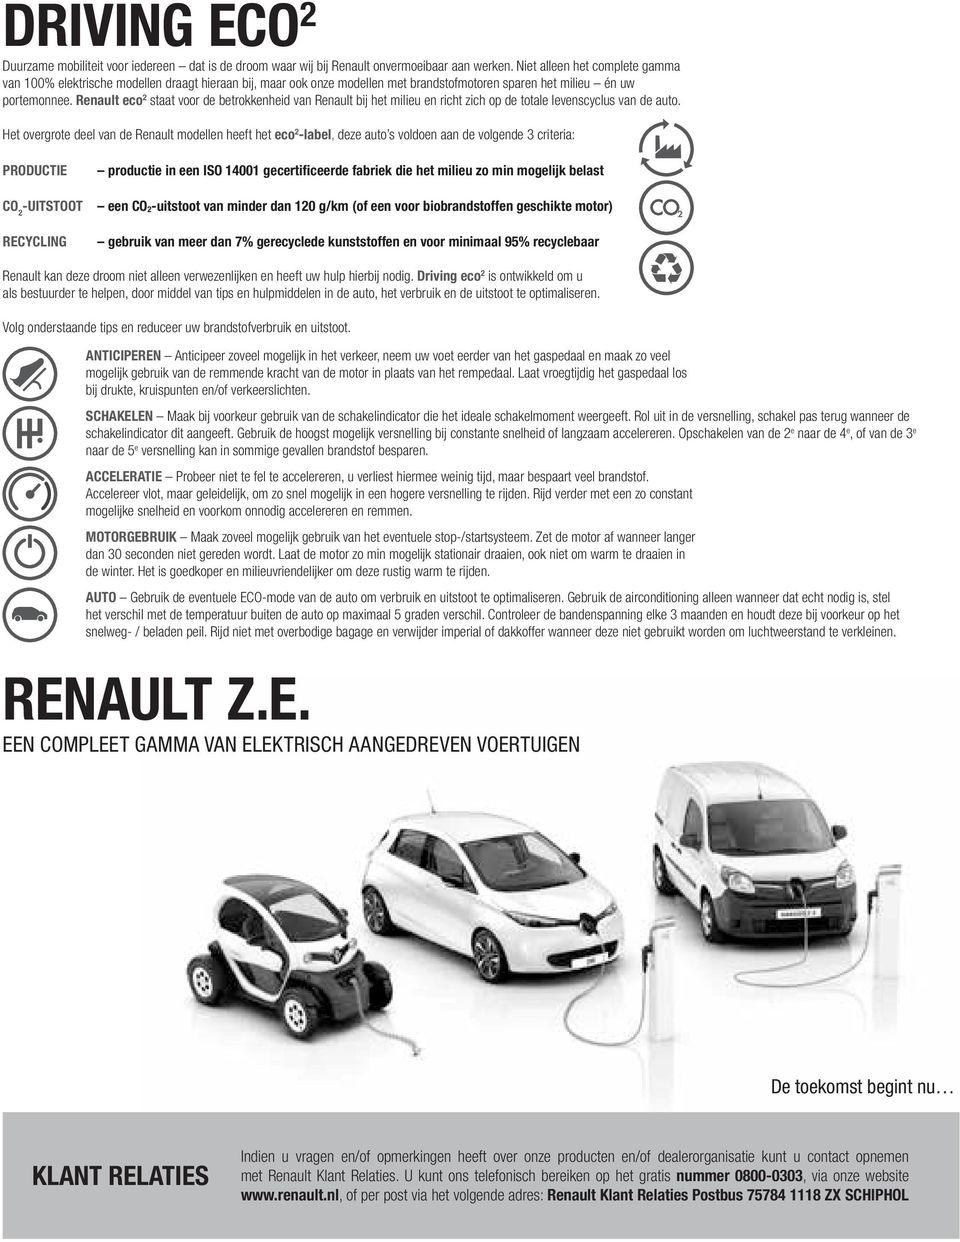 Renault eco 2 staat voor de betrokkenheid van Renault bij het milieu en richt zich op de totale levenscyclus van de auto.